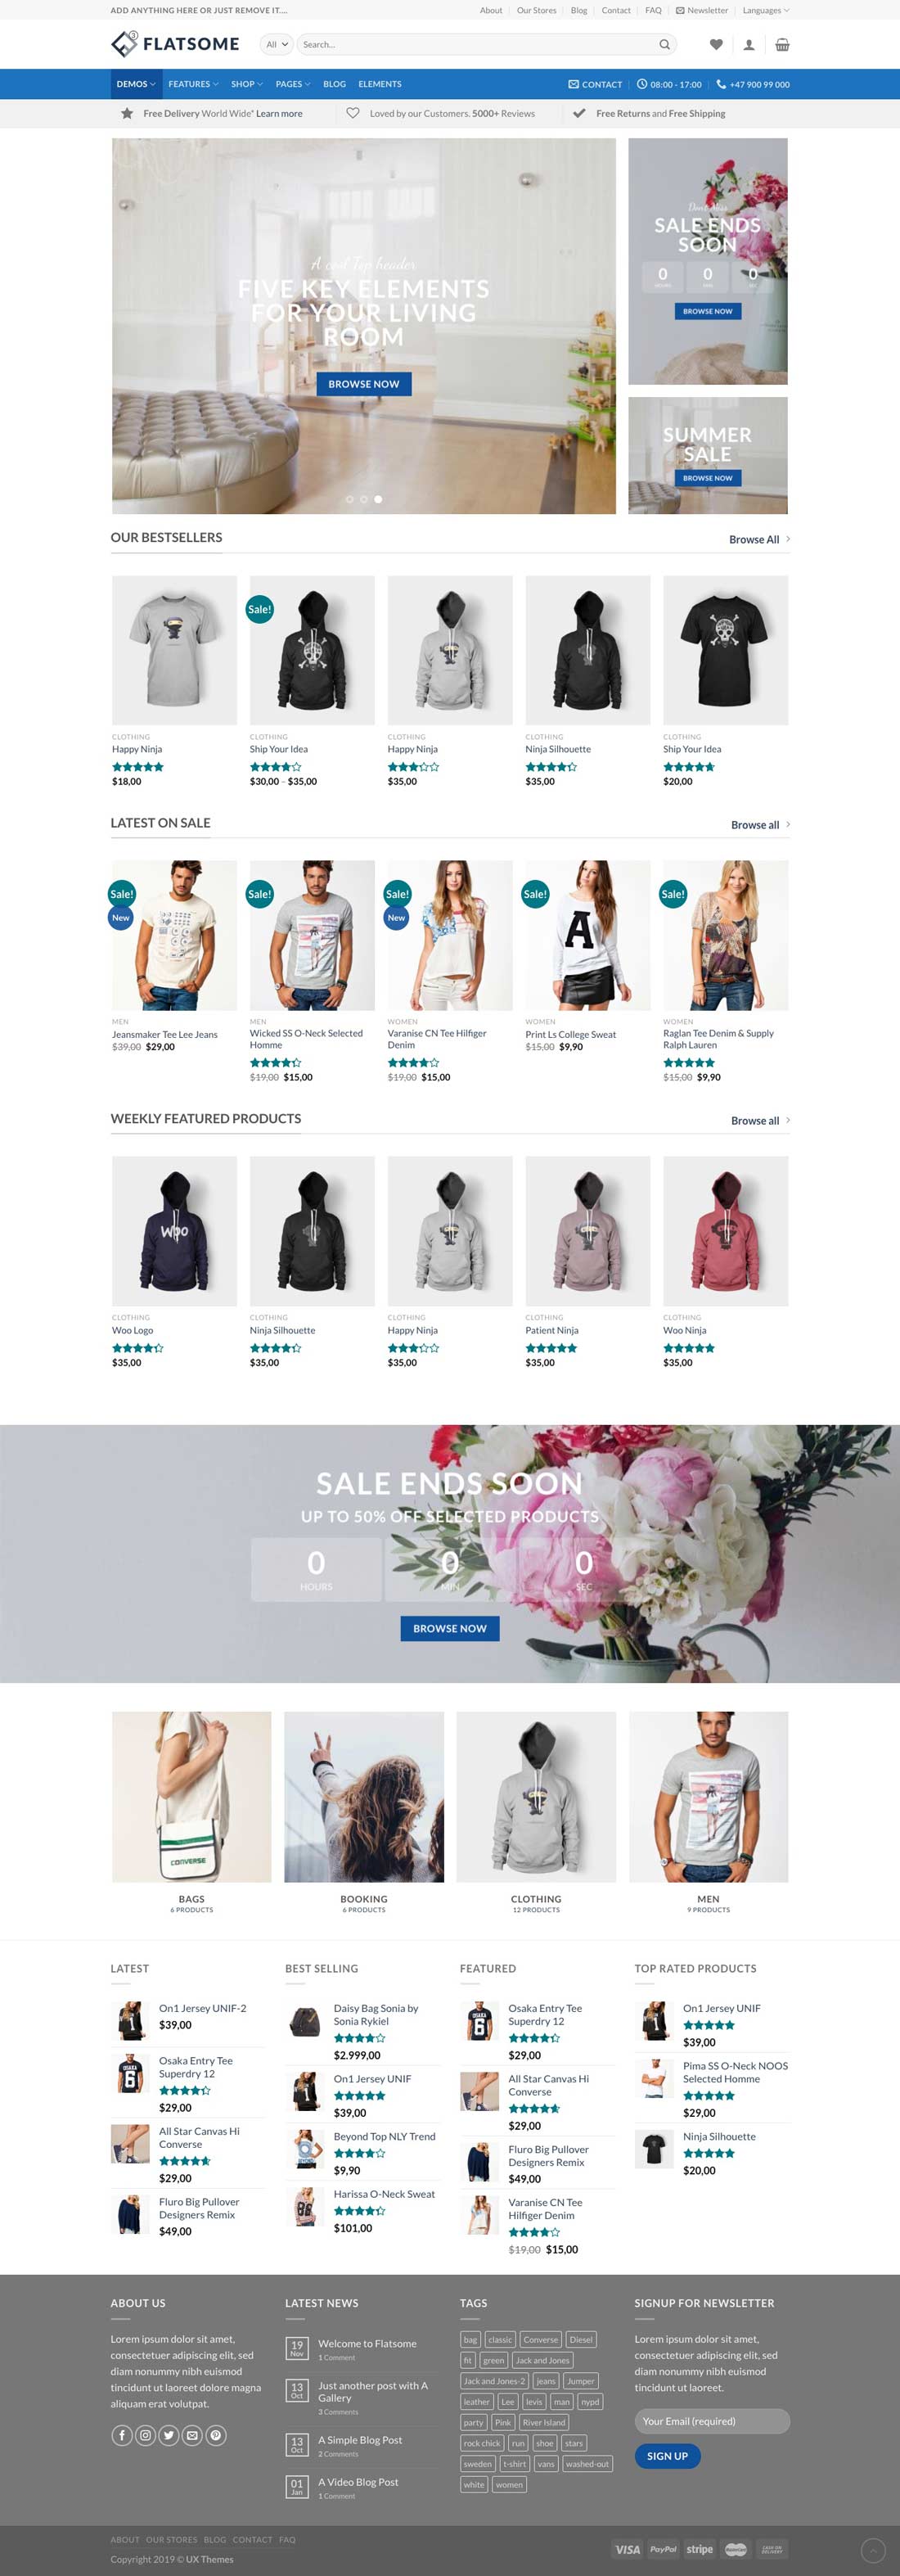 ecommerce website design sample